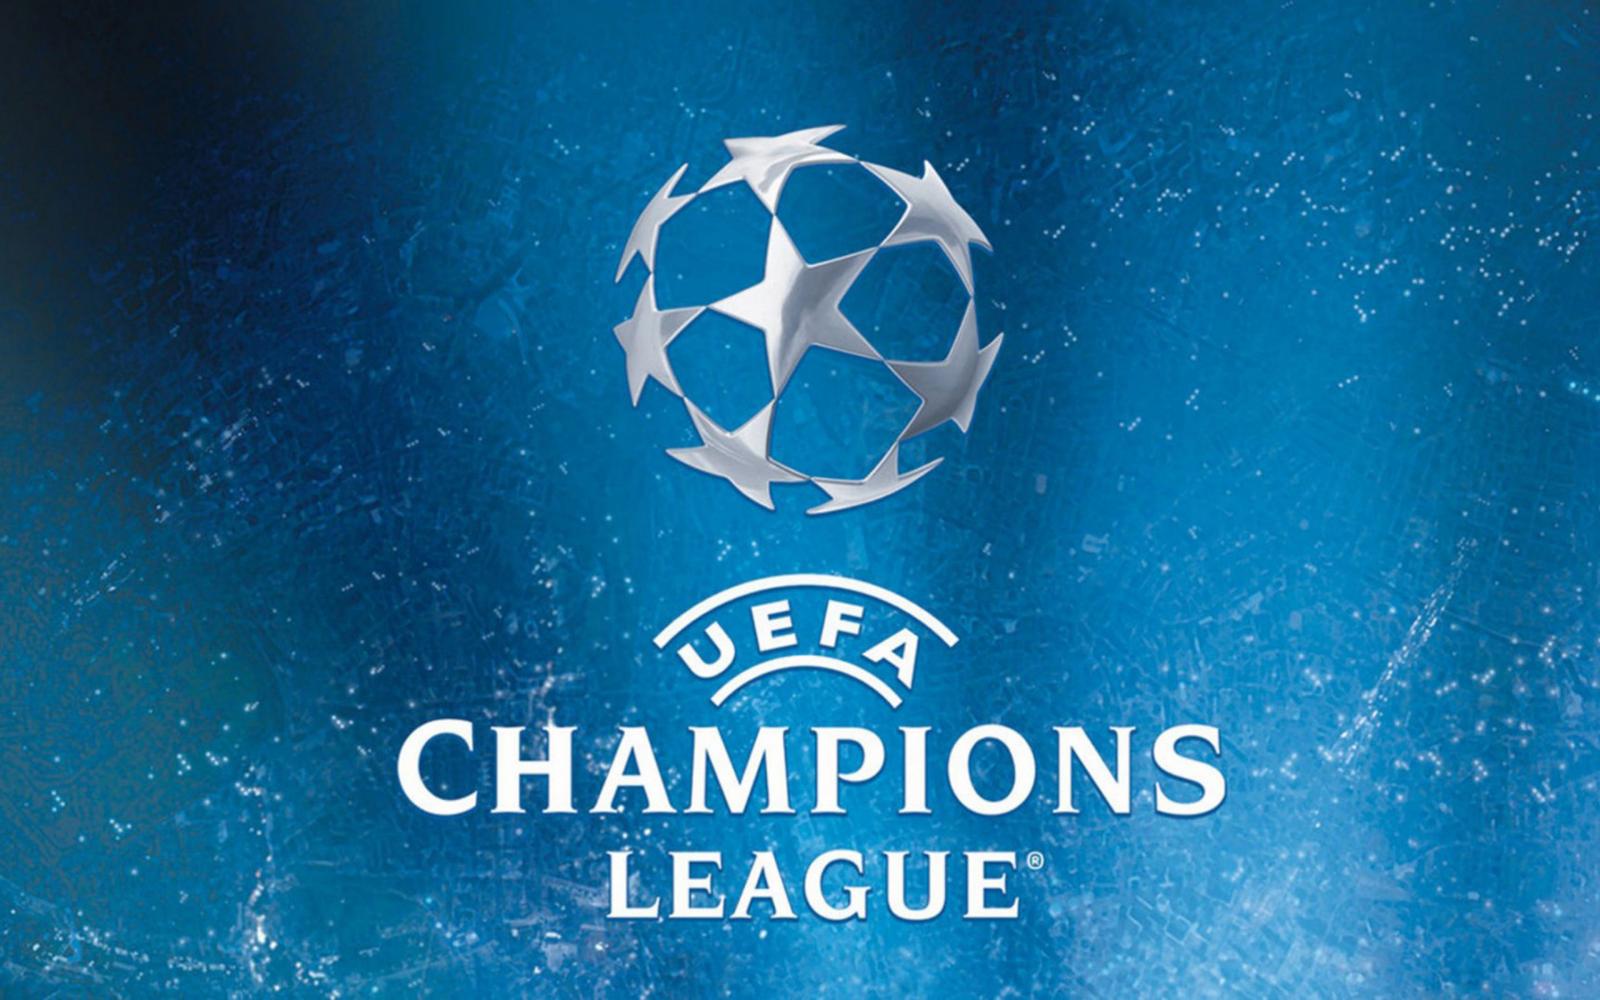 Букмекеры: Реал Мадрид – фаворит Лиги чемпионов сезона 2017/2018